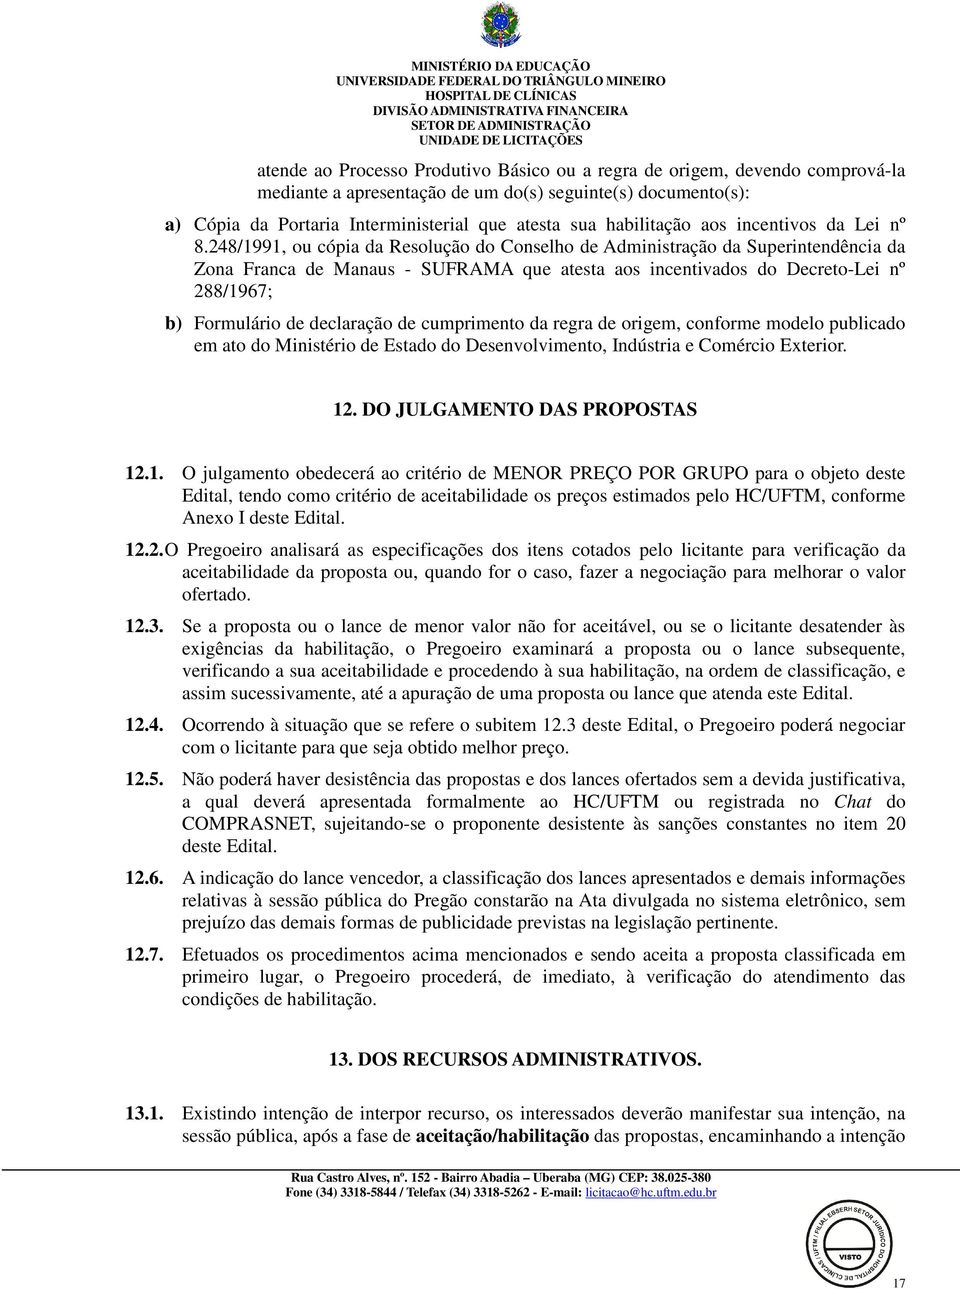 248/1991, ou cópia da Resolução do Conselho de Administração da Superintendência da Zona Franca de Manaus - SUFRAMA que atesta aos incentivados do Decreto-Lei nº 288/1967; b) Formulário de declaração